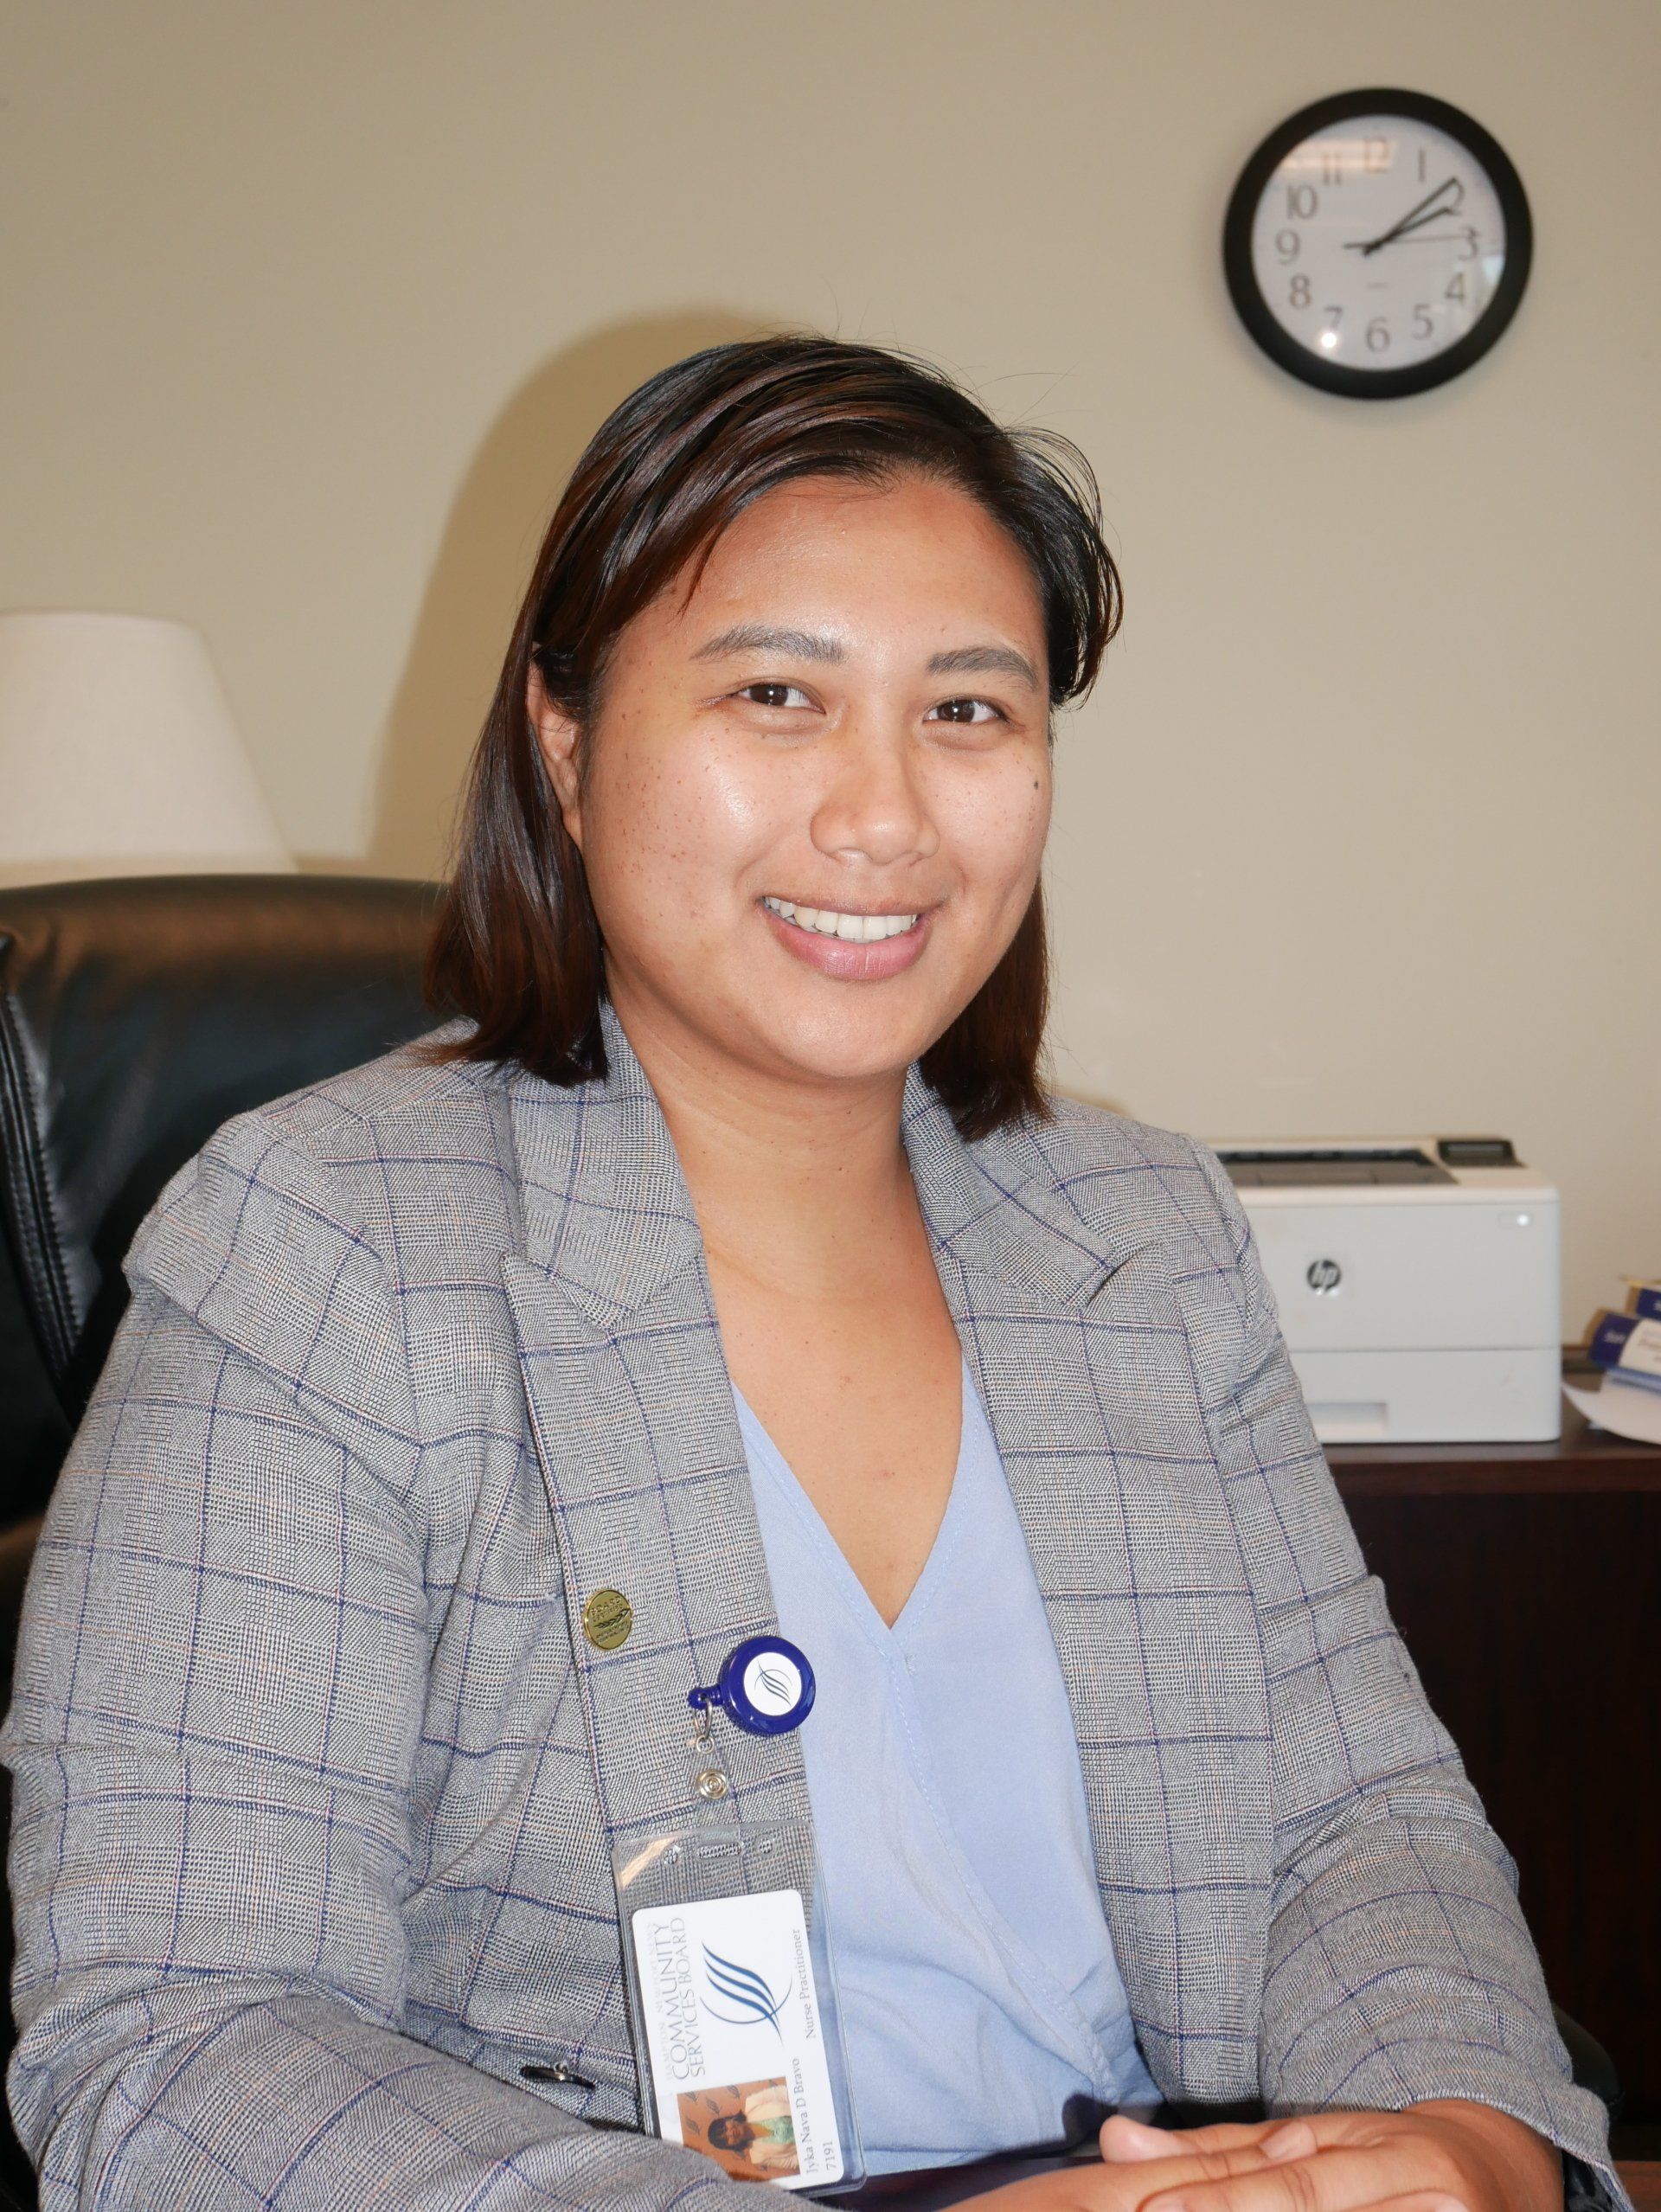 Jyka Nava D. Bravo, RN, MSN, PMHNP-BC
Nurse Practitioner